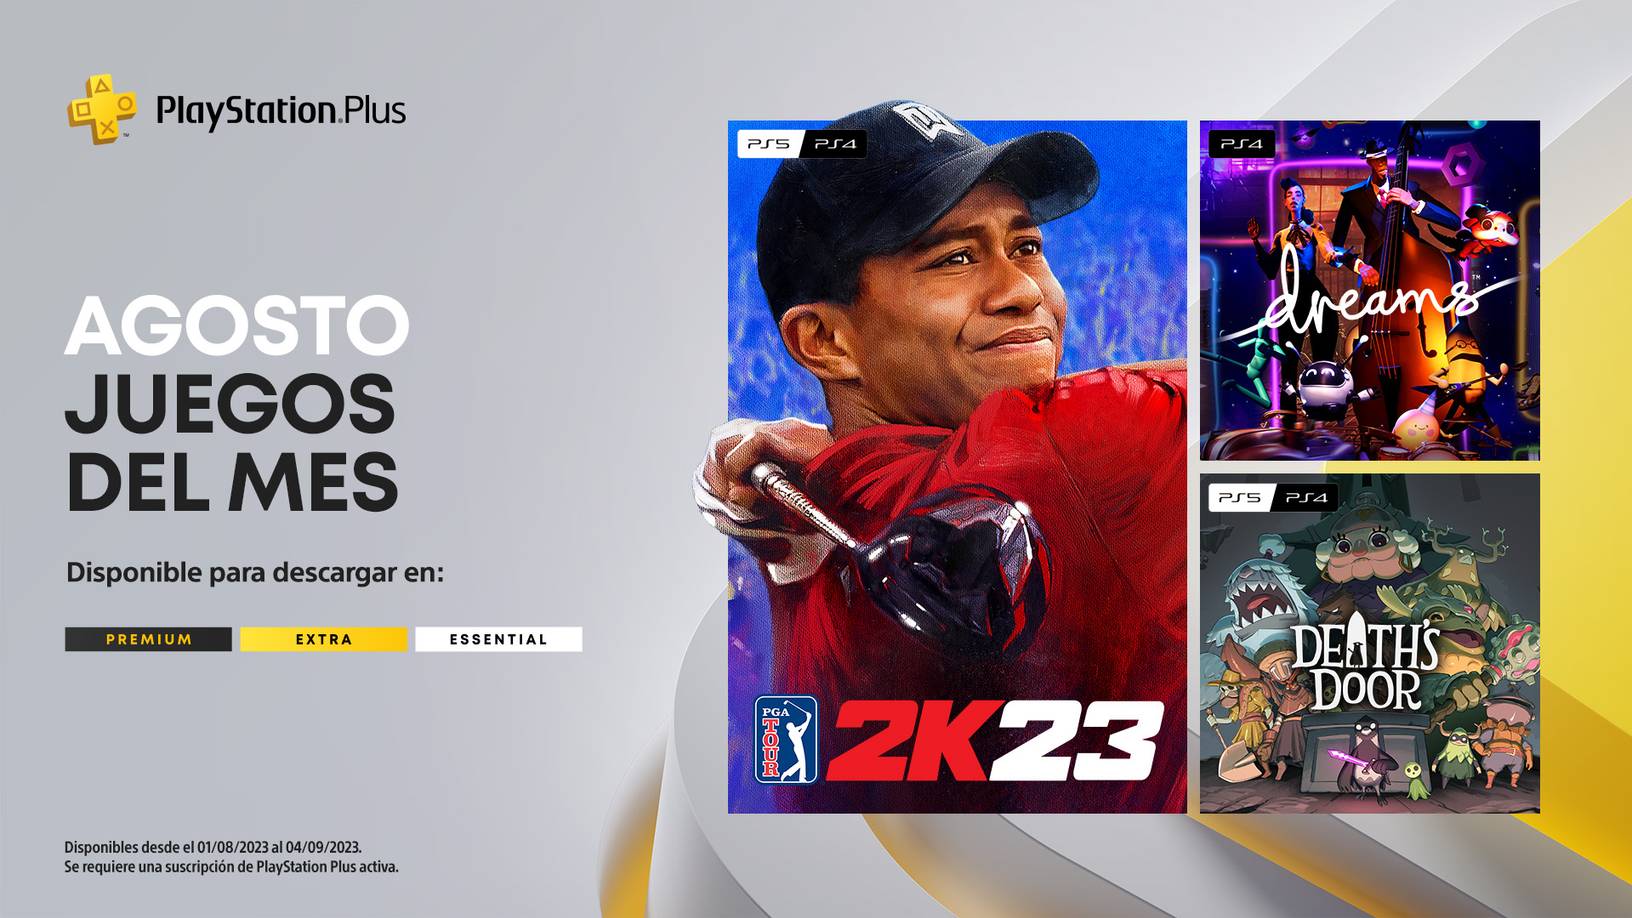 PGA TOUR 2K23, Dreams y Death's Door en agosto para PlayStation Plus